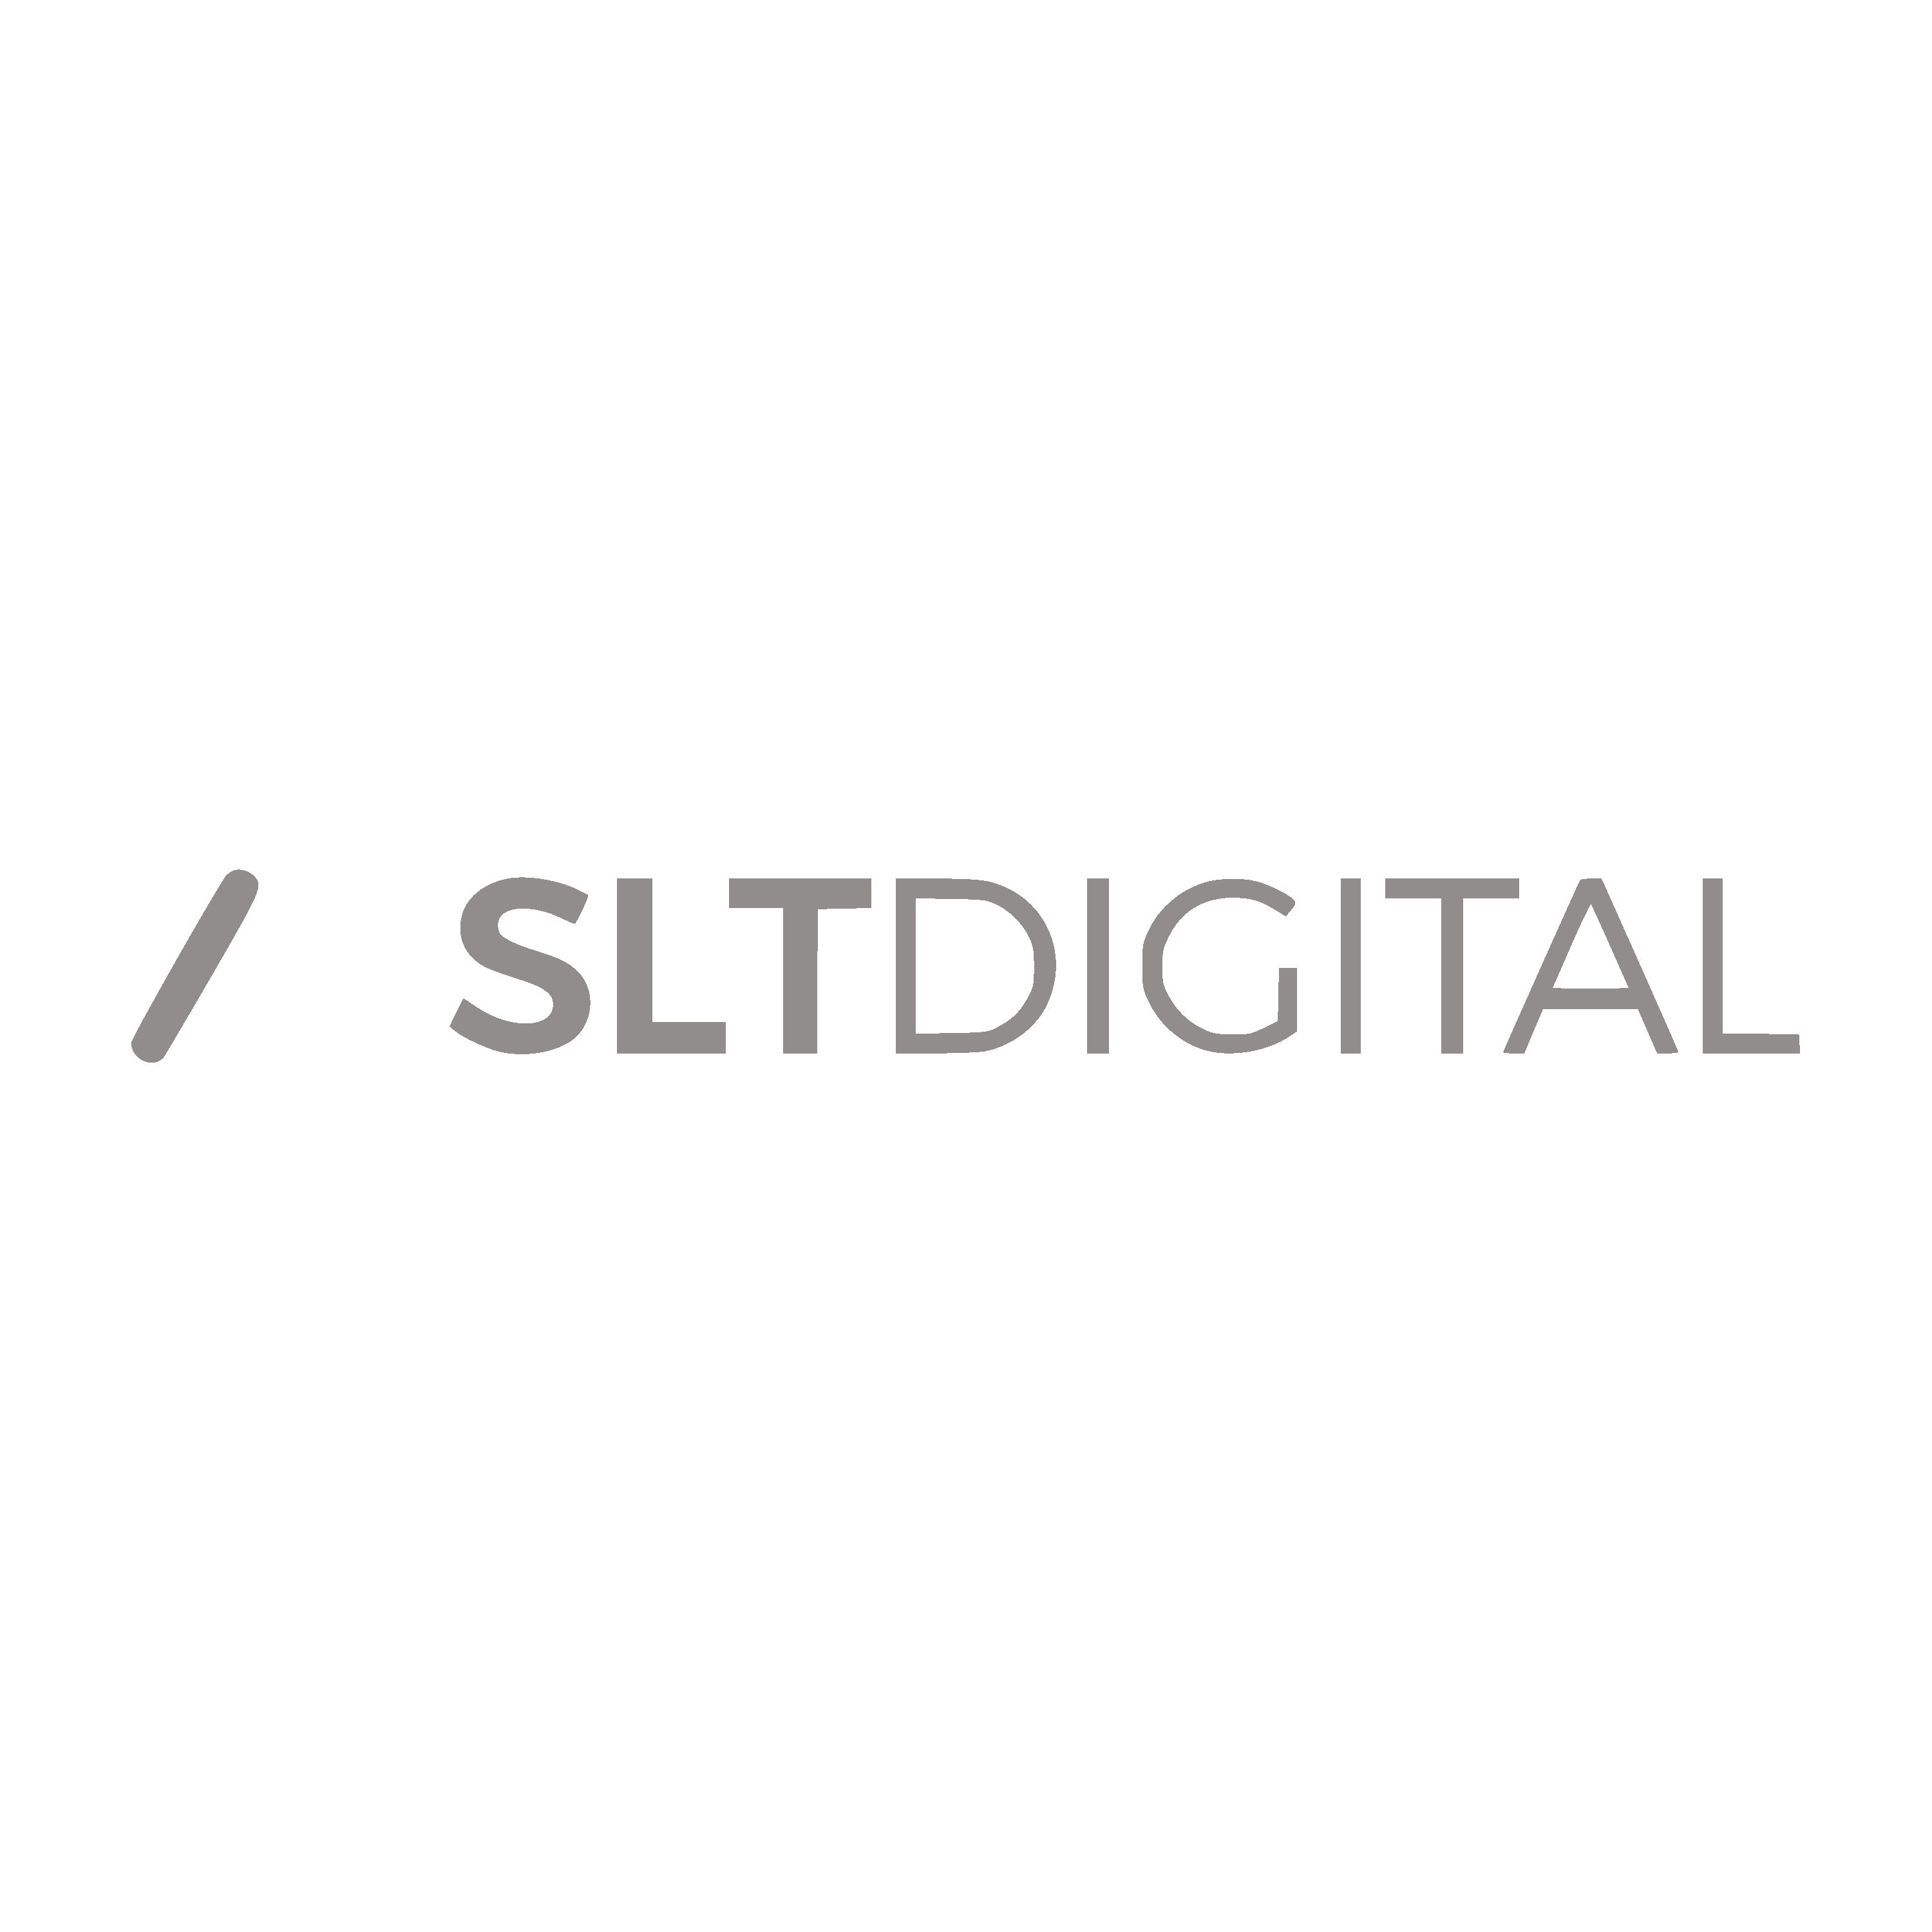 Slt Digital Logo Transparent Picture